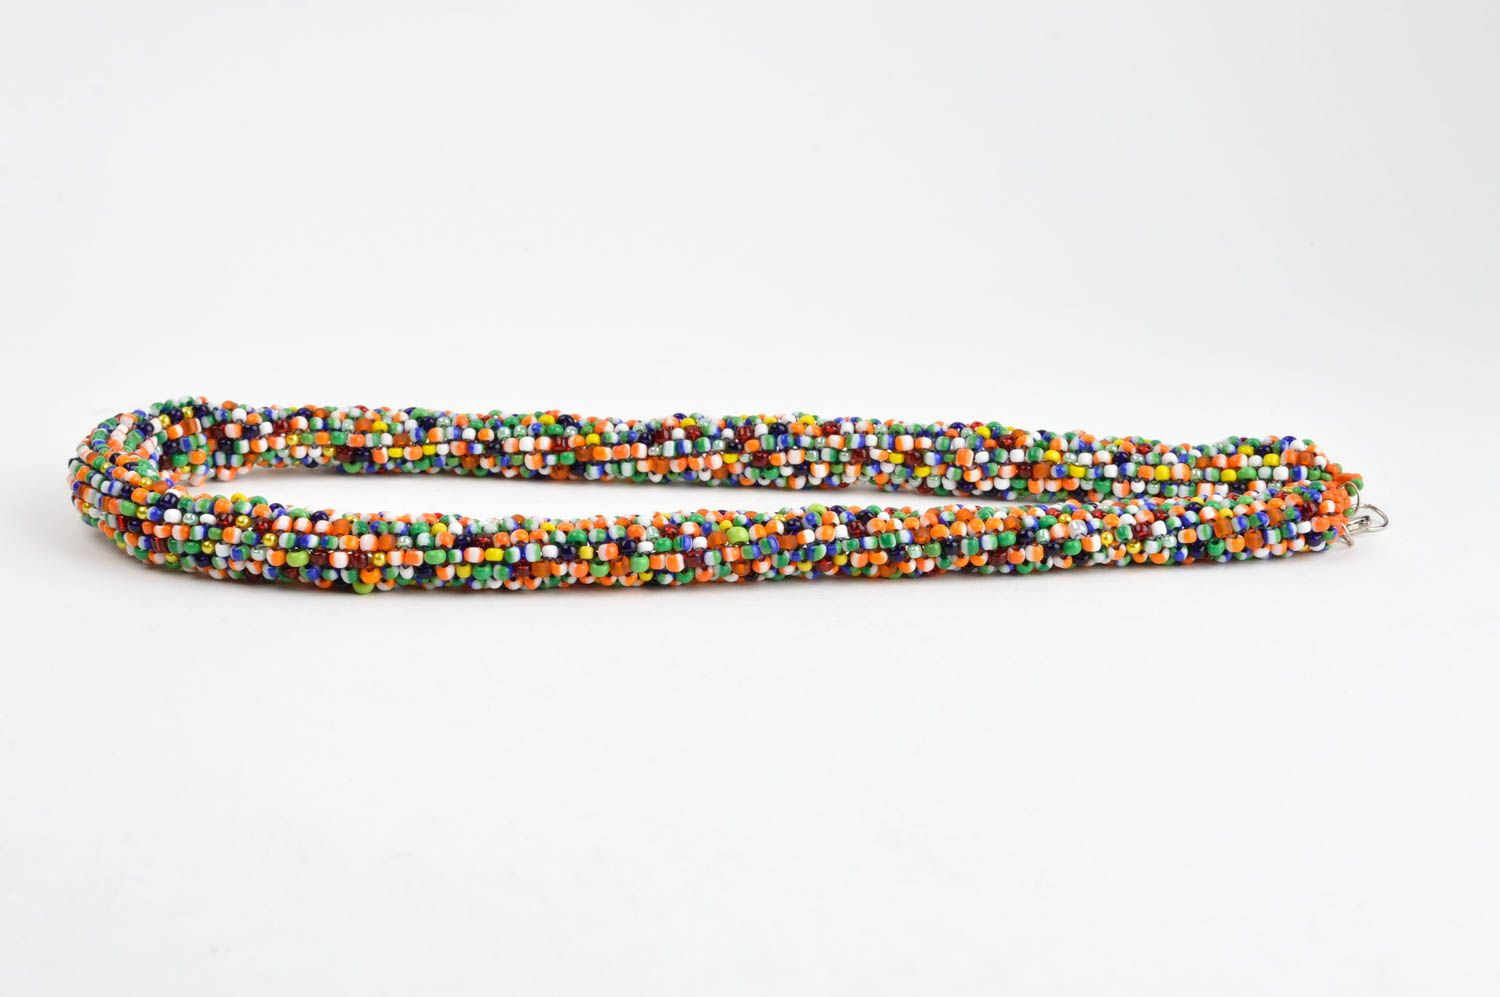 Жгут из бисера ручной работы разноцветное ожерелье из бисера авторская бижутерия фото 2